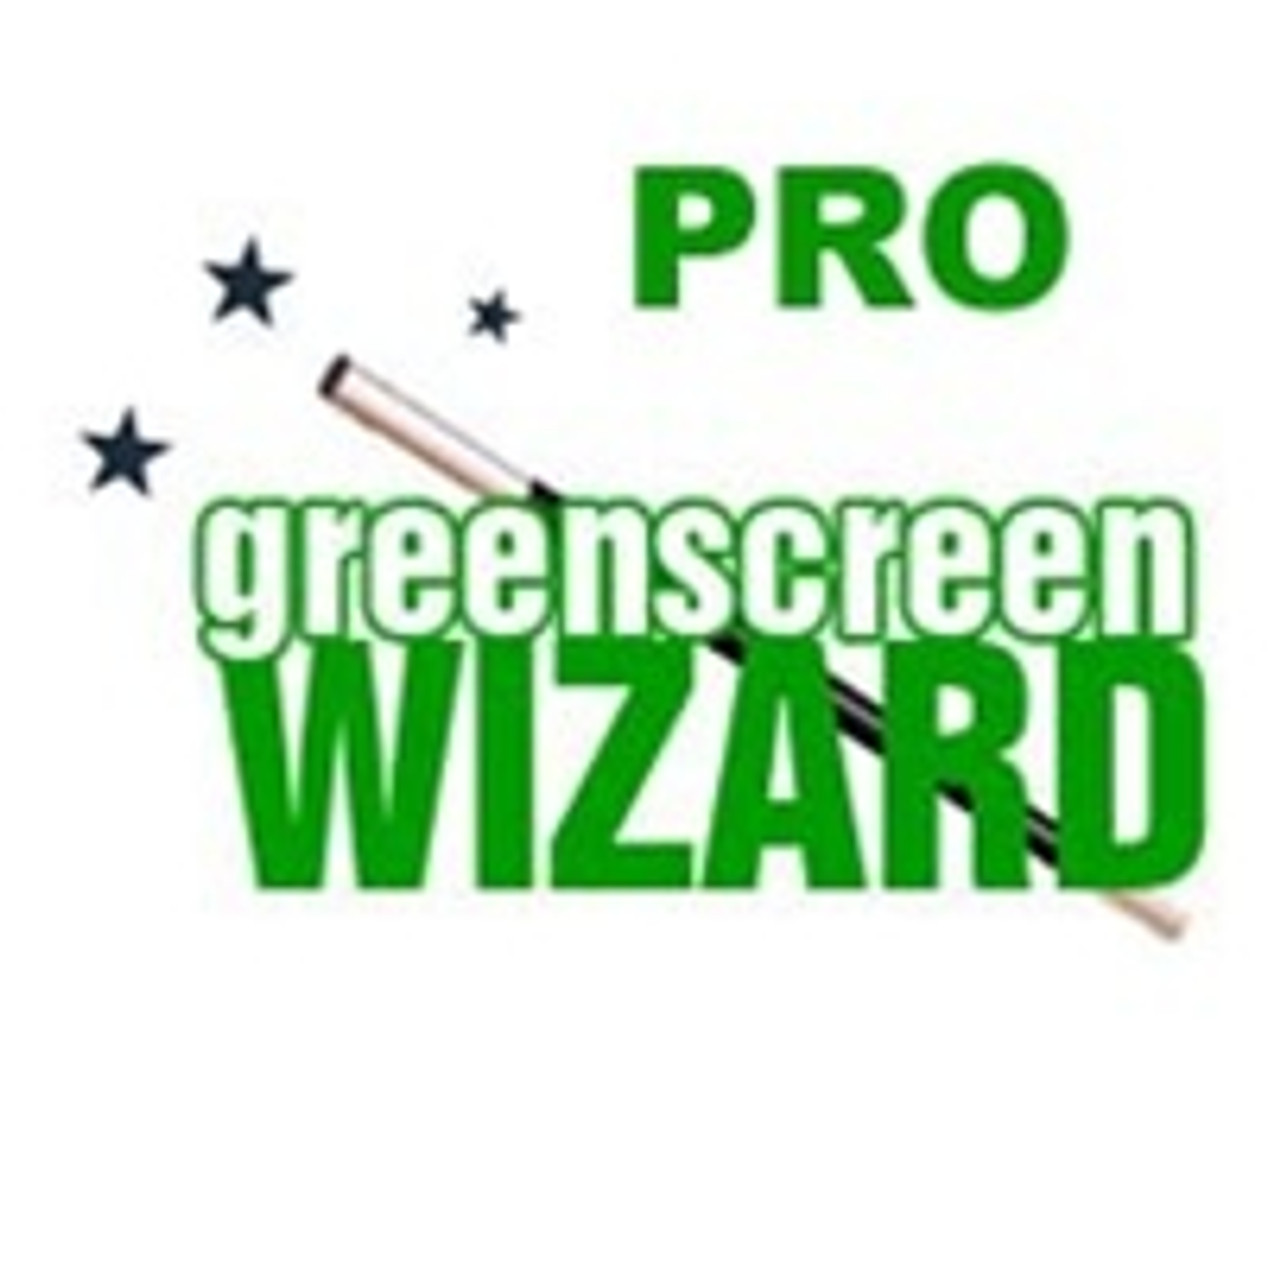 green screen wizard pro event batch